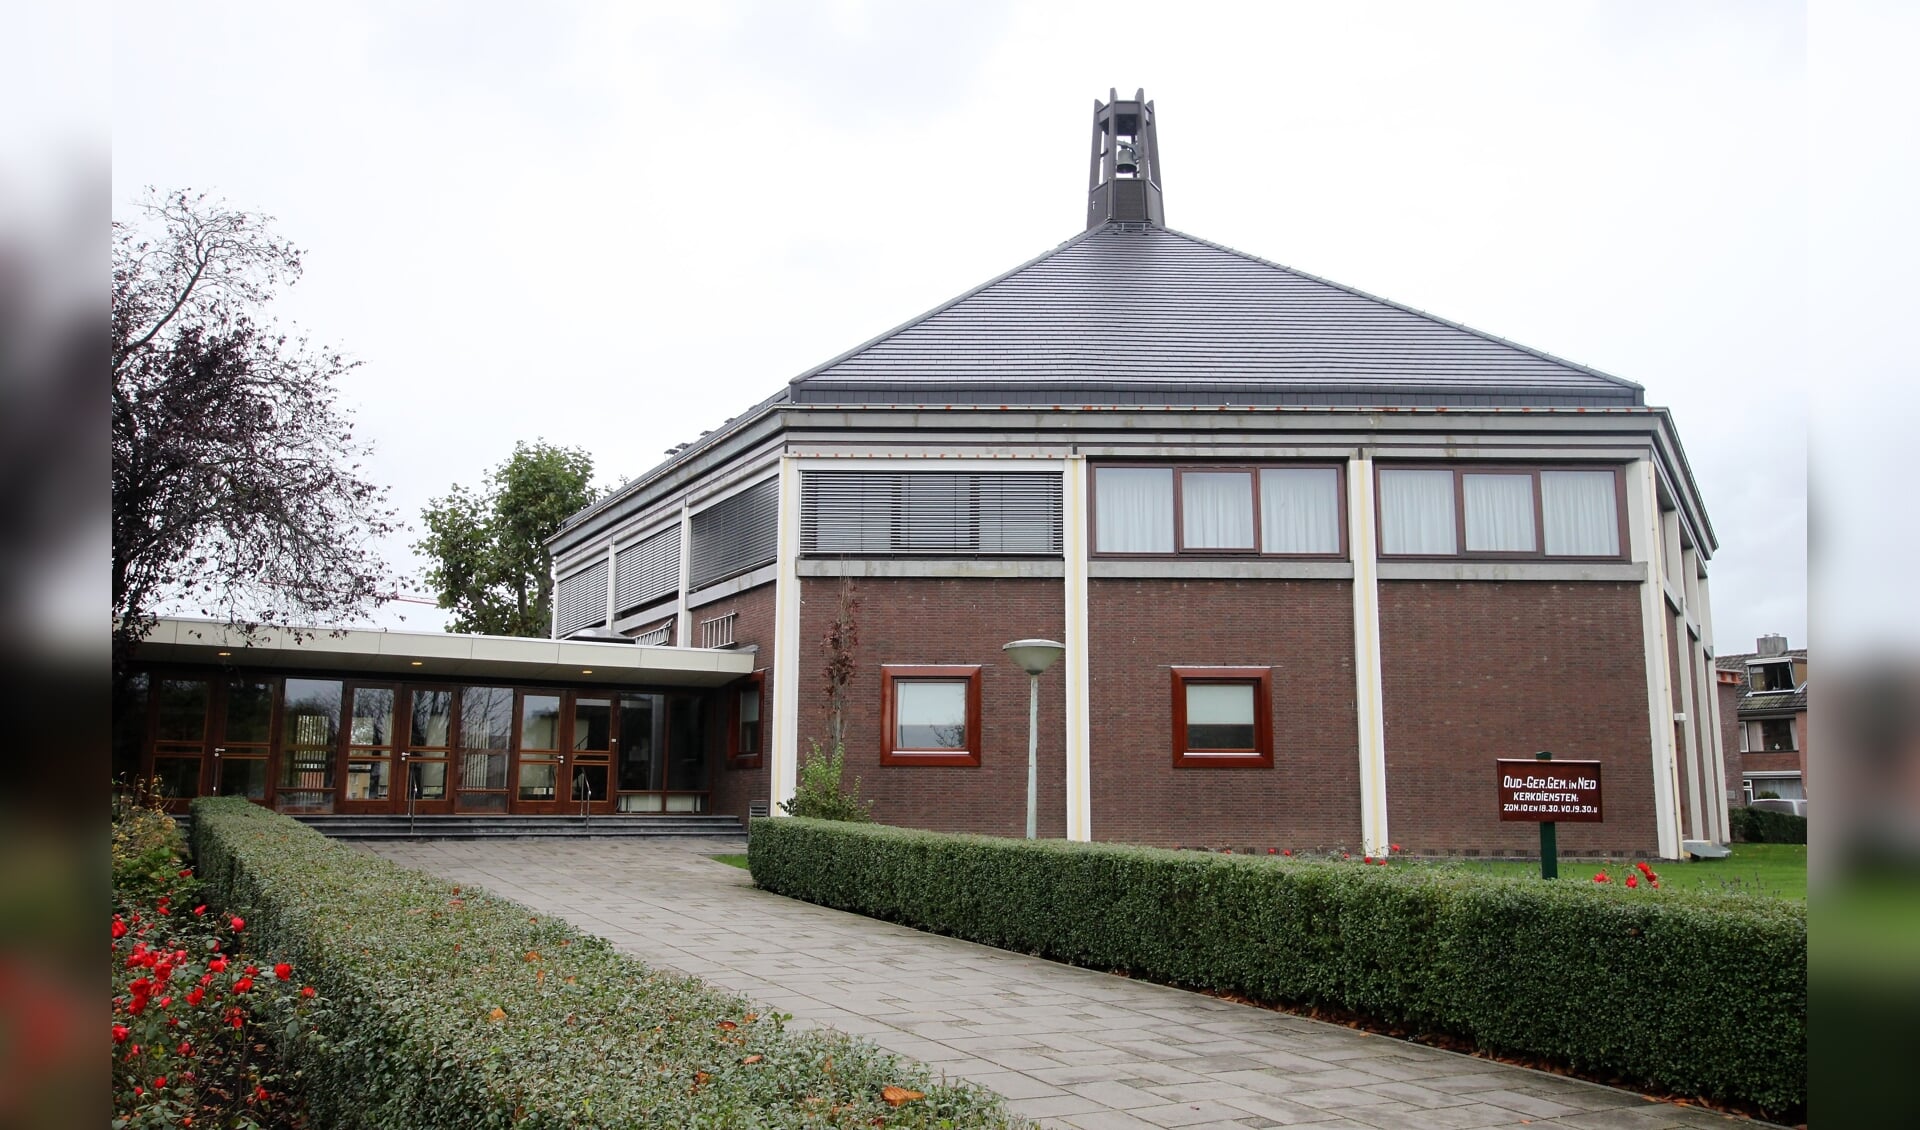 • Meer dan 200 leden van de oud gereformeerde gemeente in Nederland woonden zondag een dienst bij in de Mieraskerk. De kerk telt ruim 1.600 zitplaatsen.